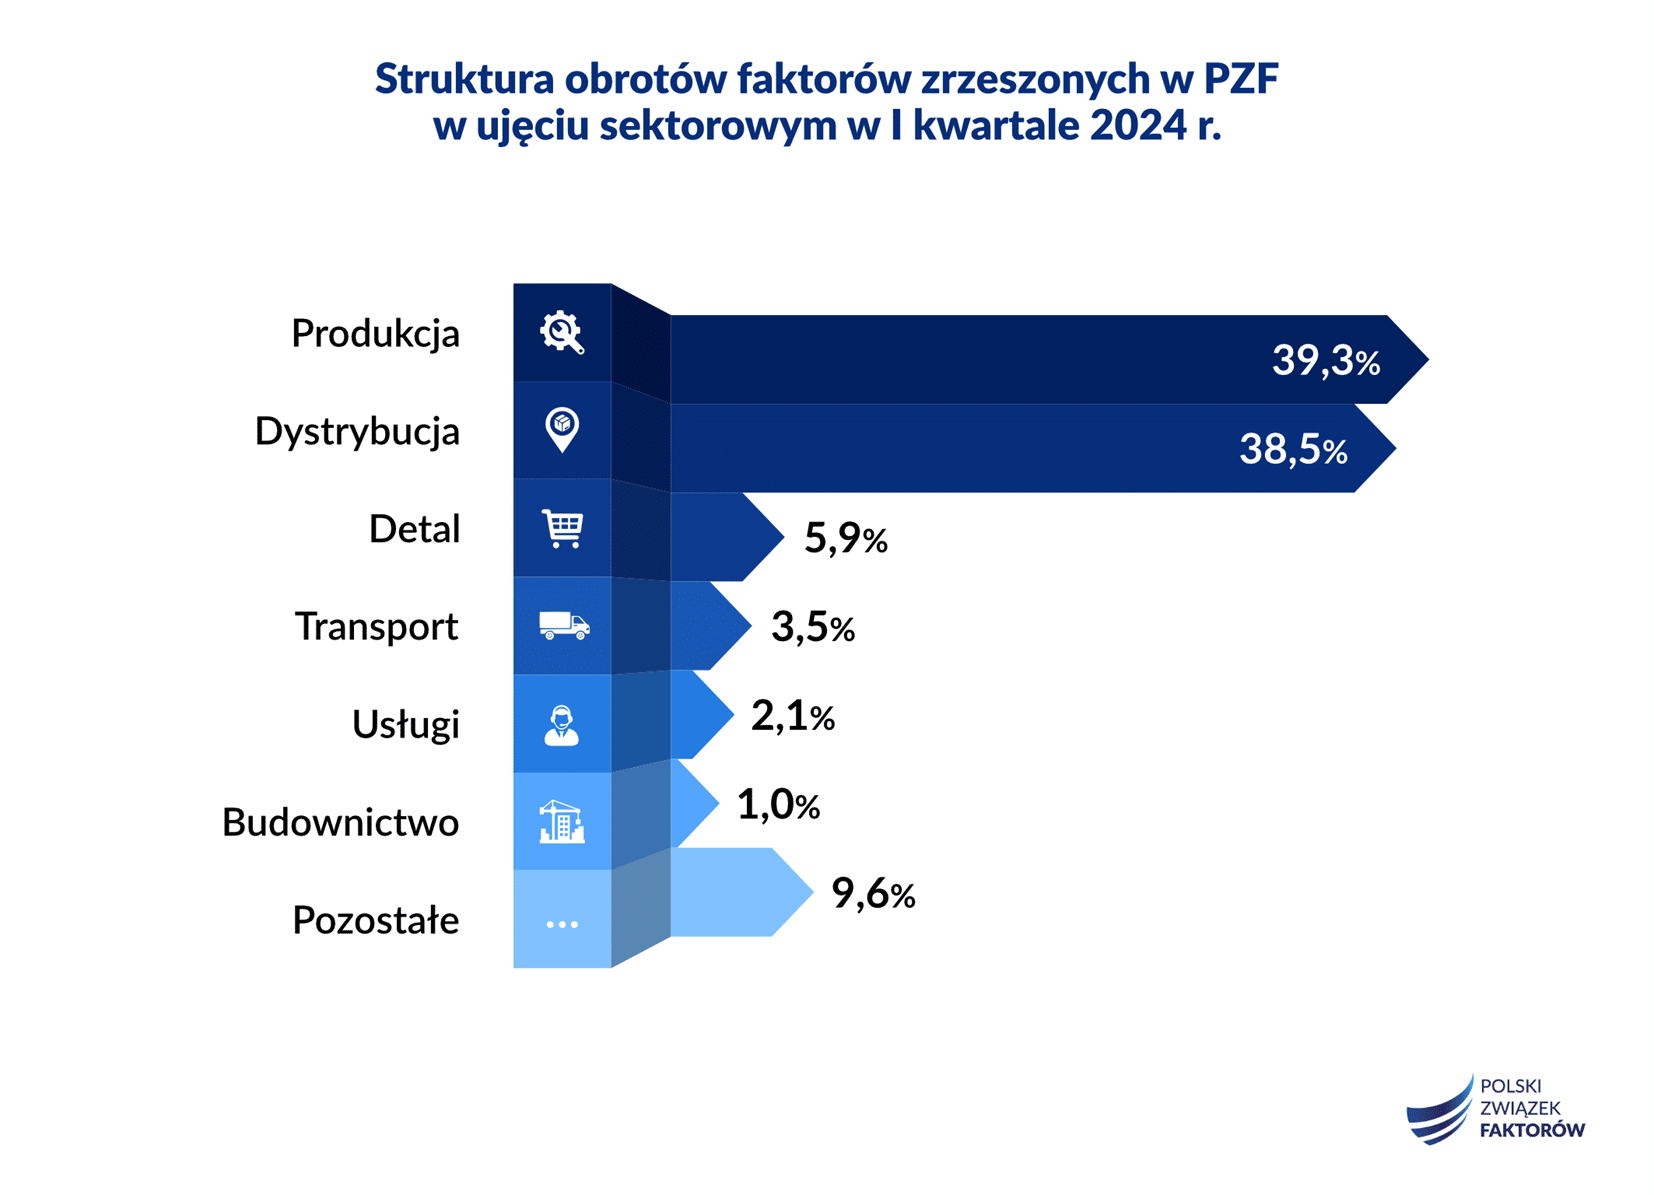 W pierwszym kwartale 2024 r. na rynku faktoringu w Polsce struktura